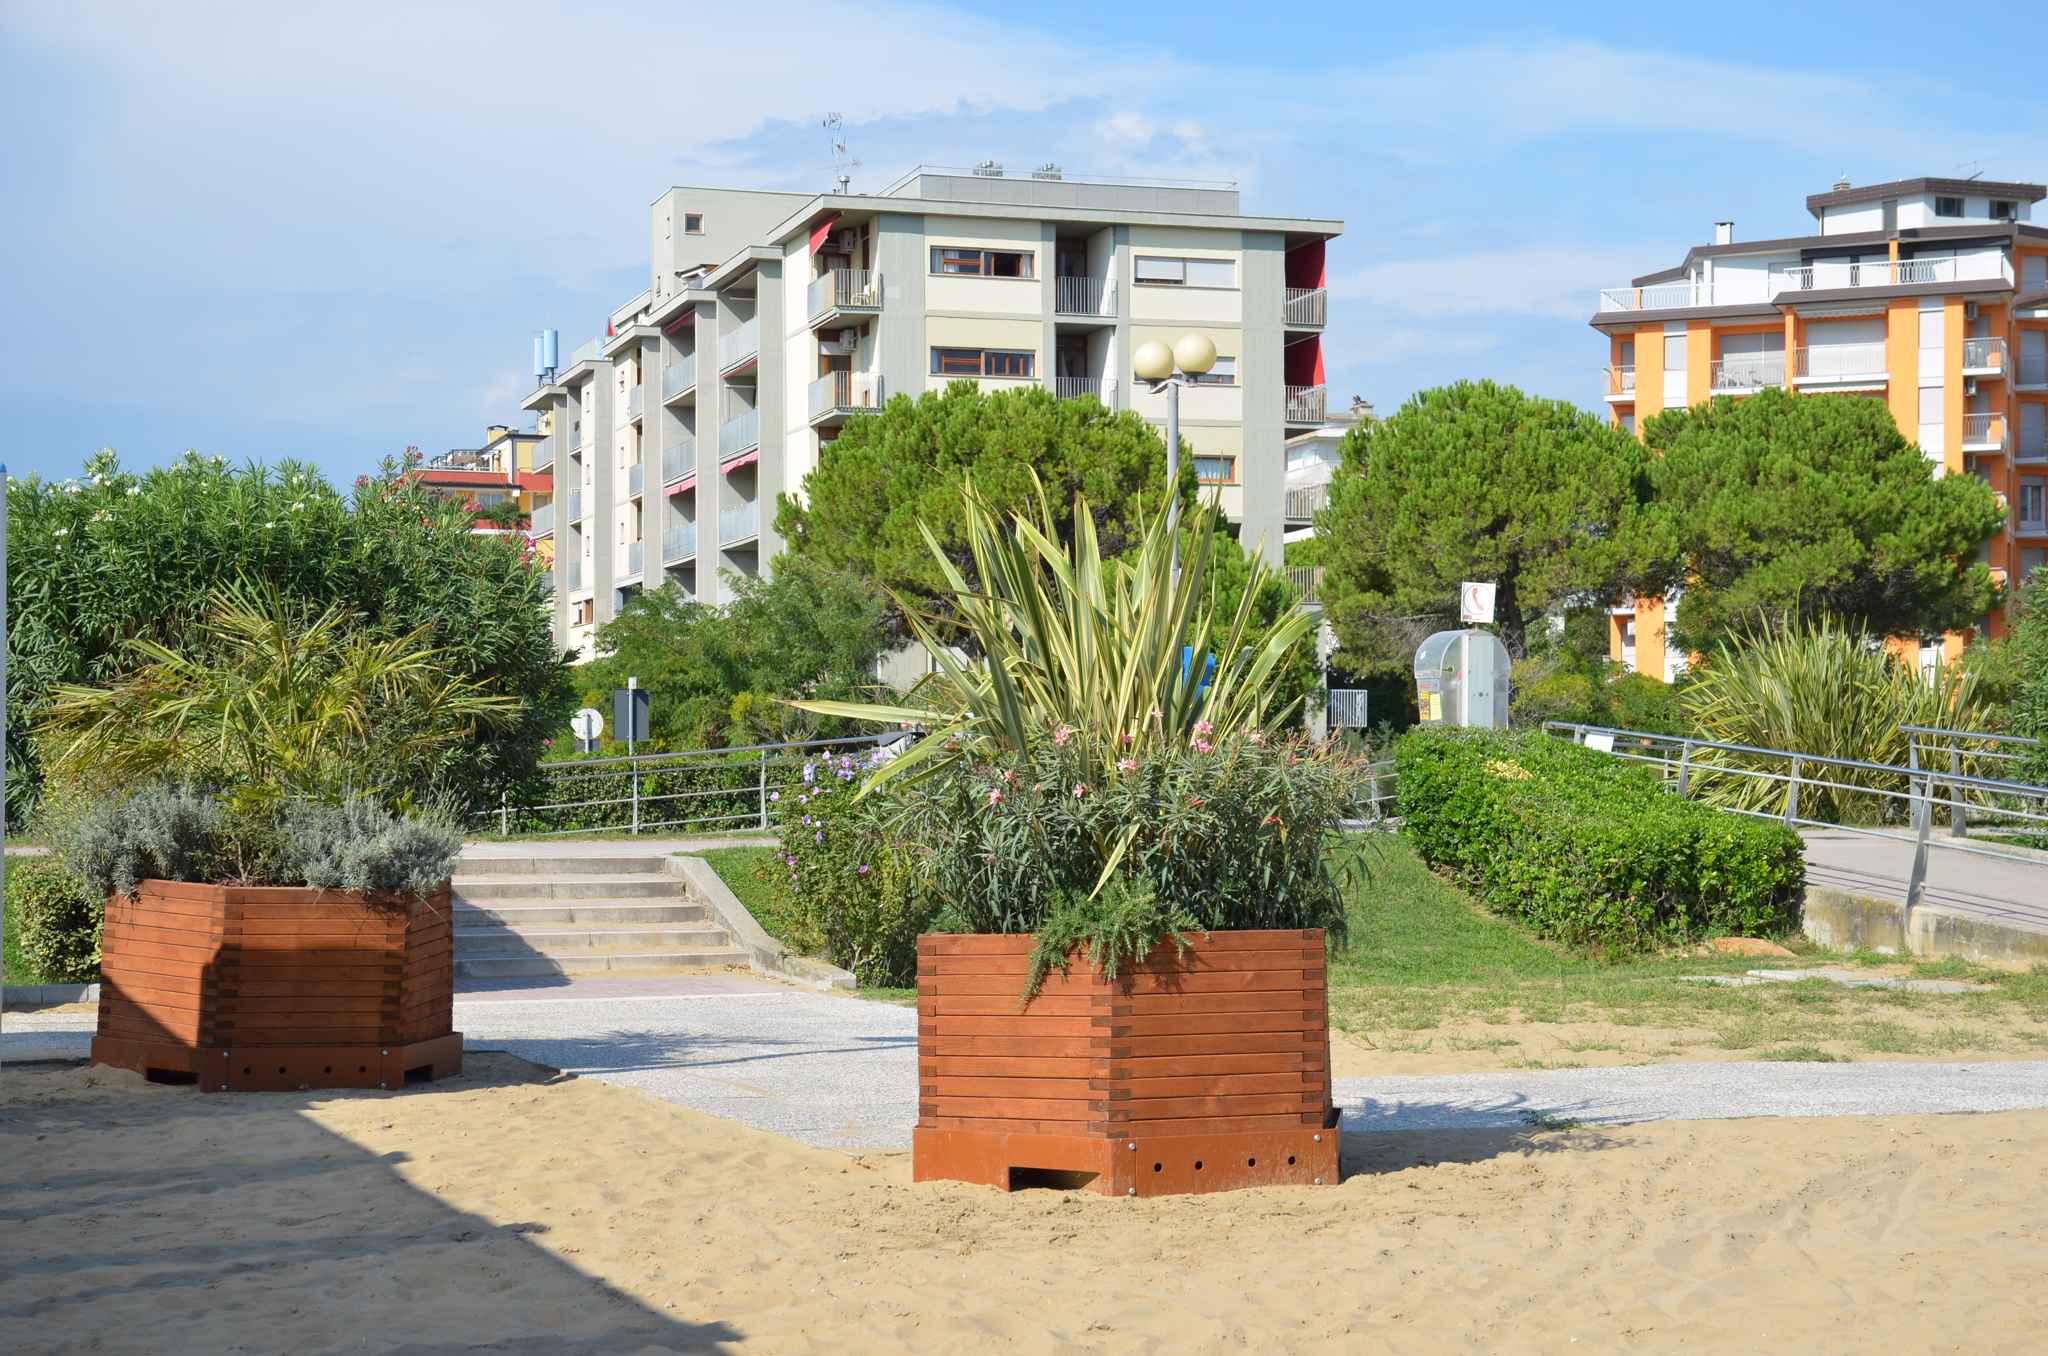 Ferienwohnung mit Balkon, direkt am Strand   Venetien